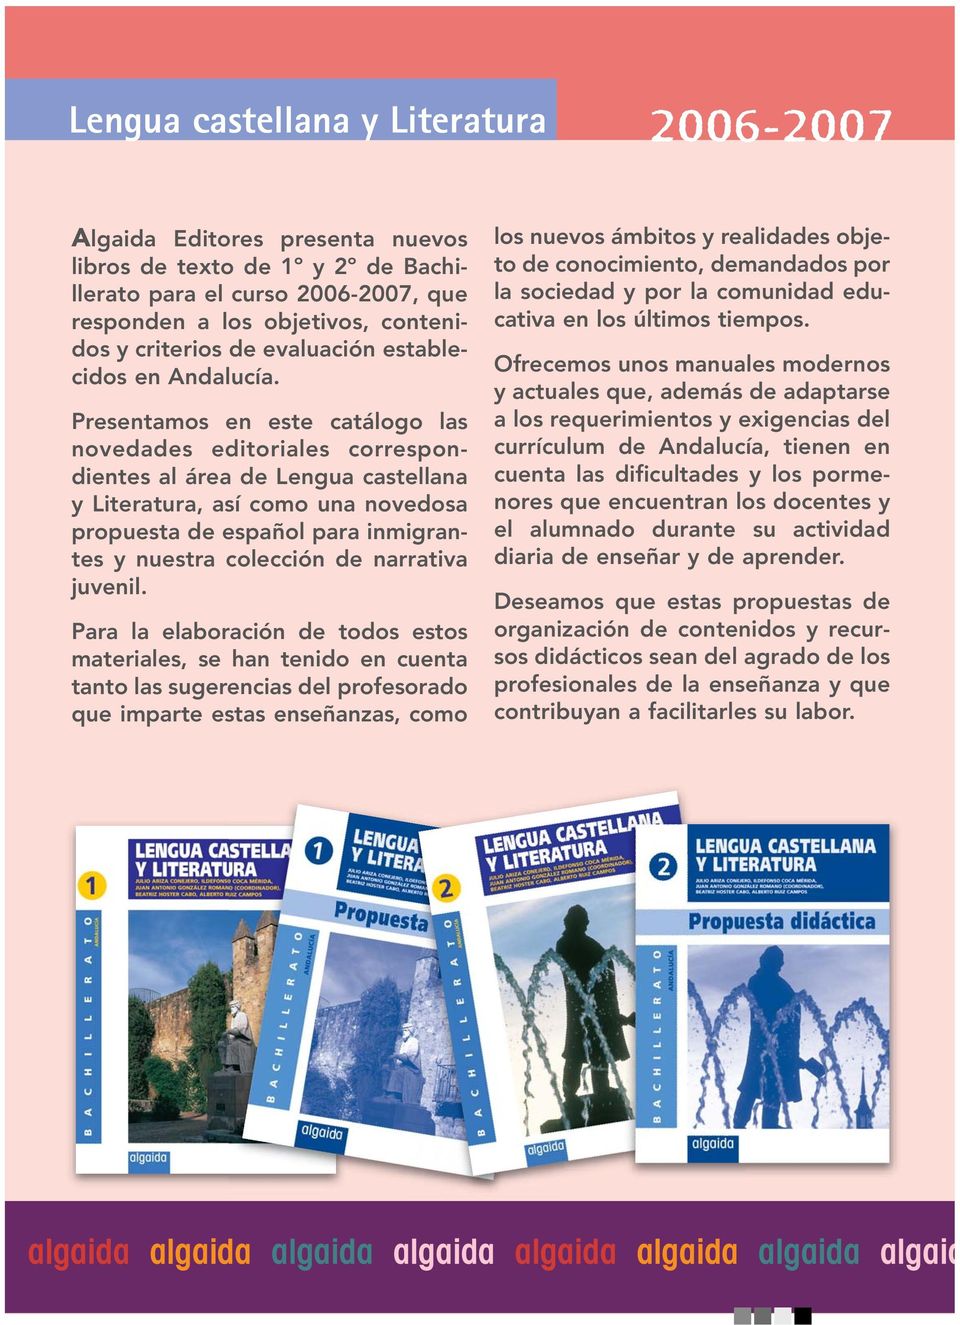 Presentamos en este catálogo las novedades editoriales correspondientes al área de Lengua castellana y Literatura, así como una novedosa propuesta de español para inmigrantes y nuestra colección de